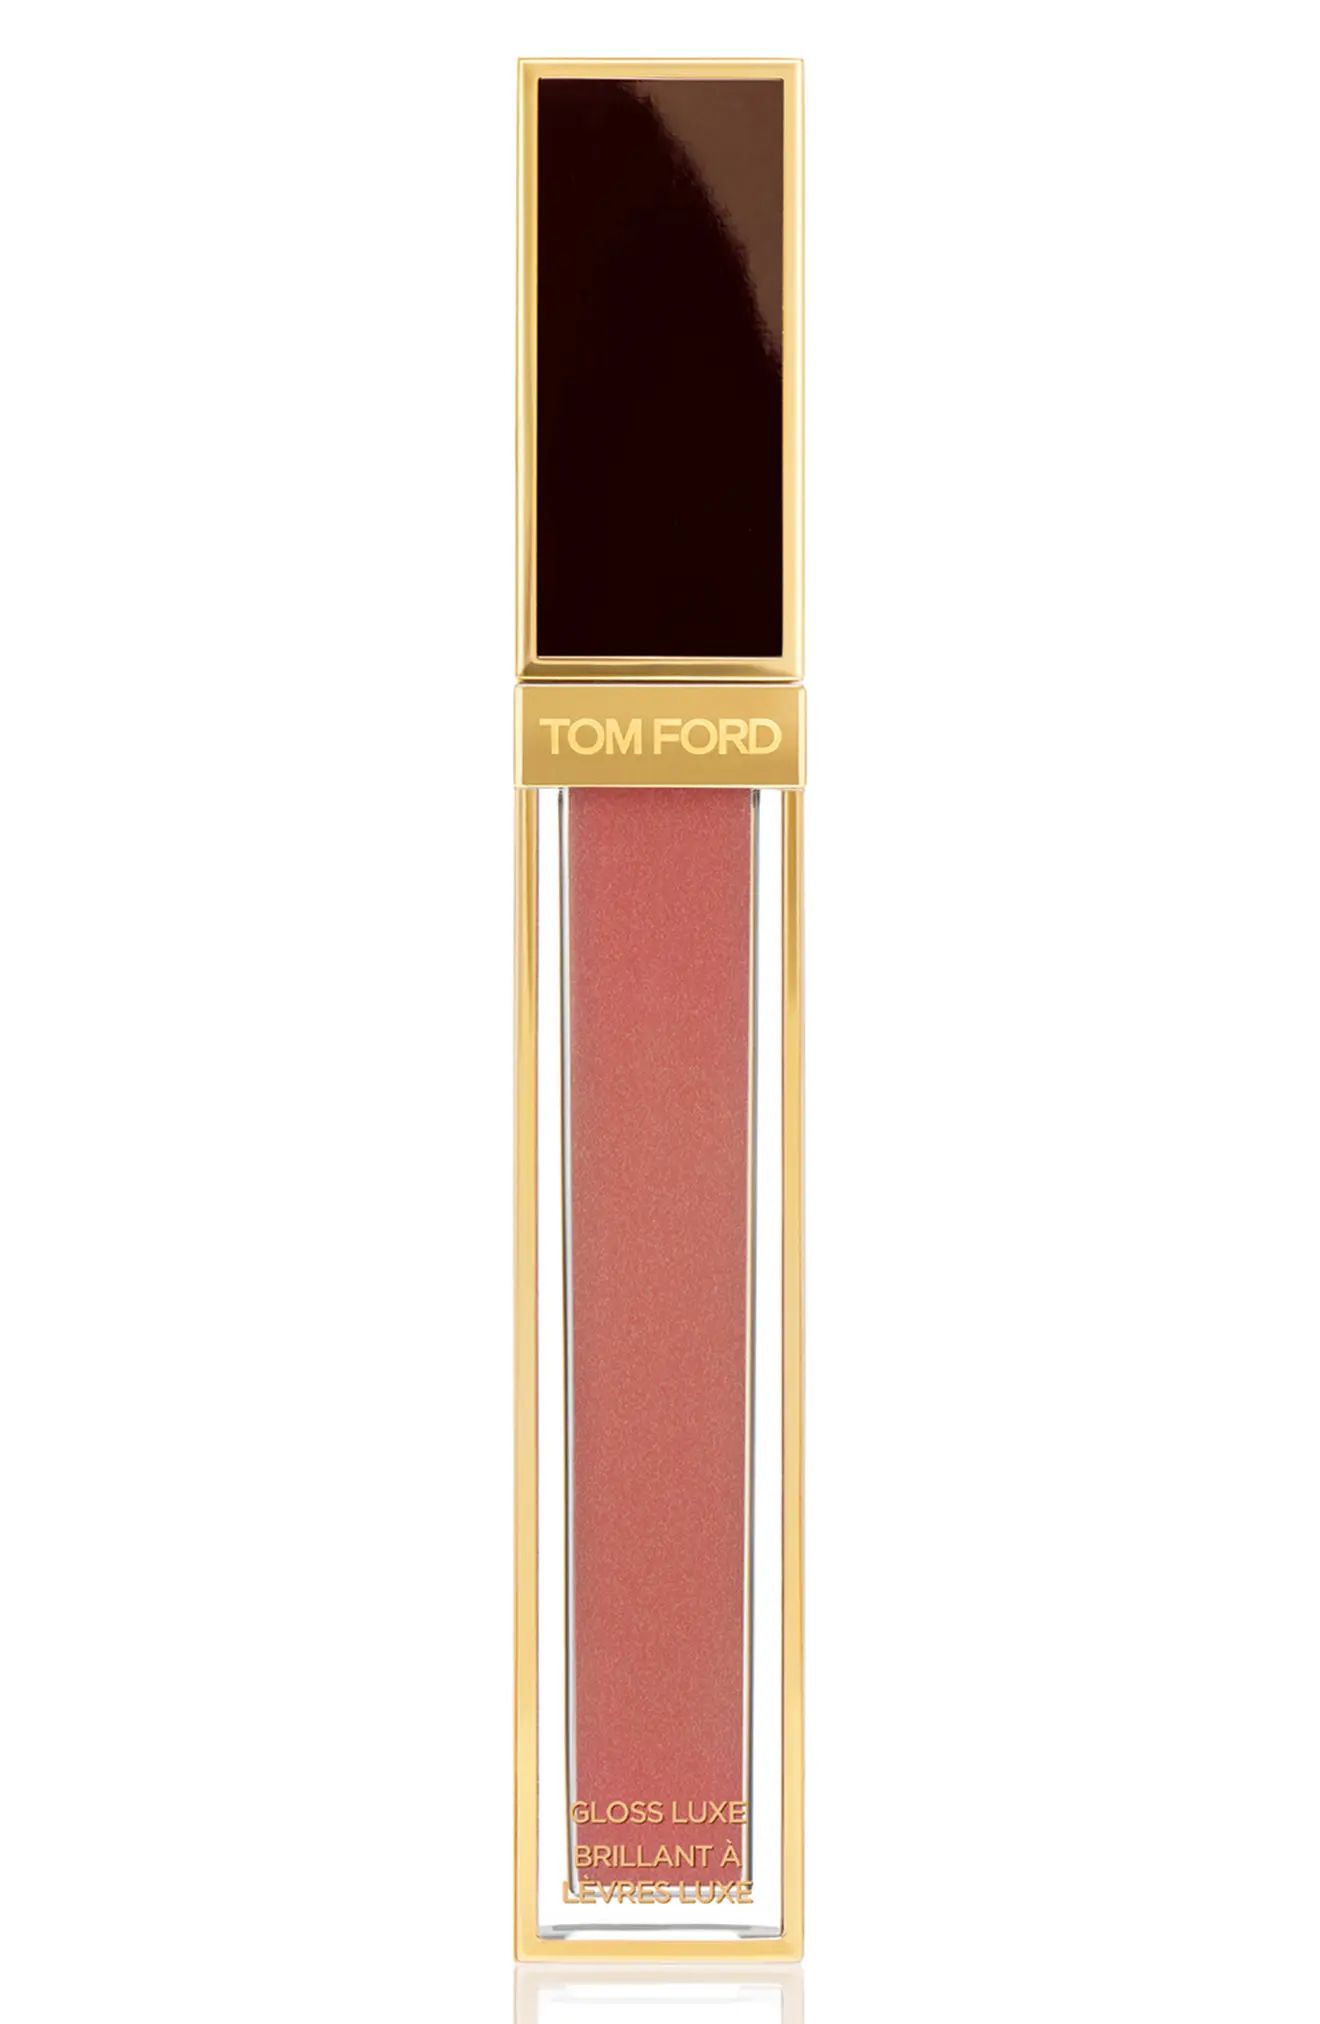 Tom Ford Gloss Luxe Moisturizing Lipgloss - 06 Ravish | Nordstrom